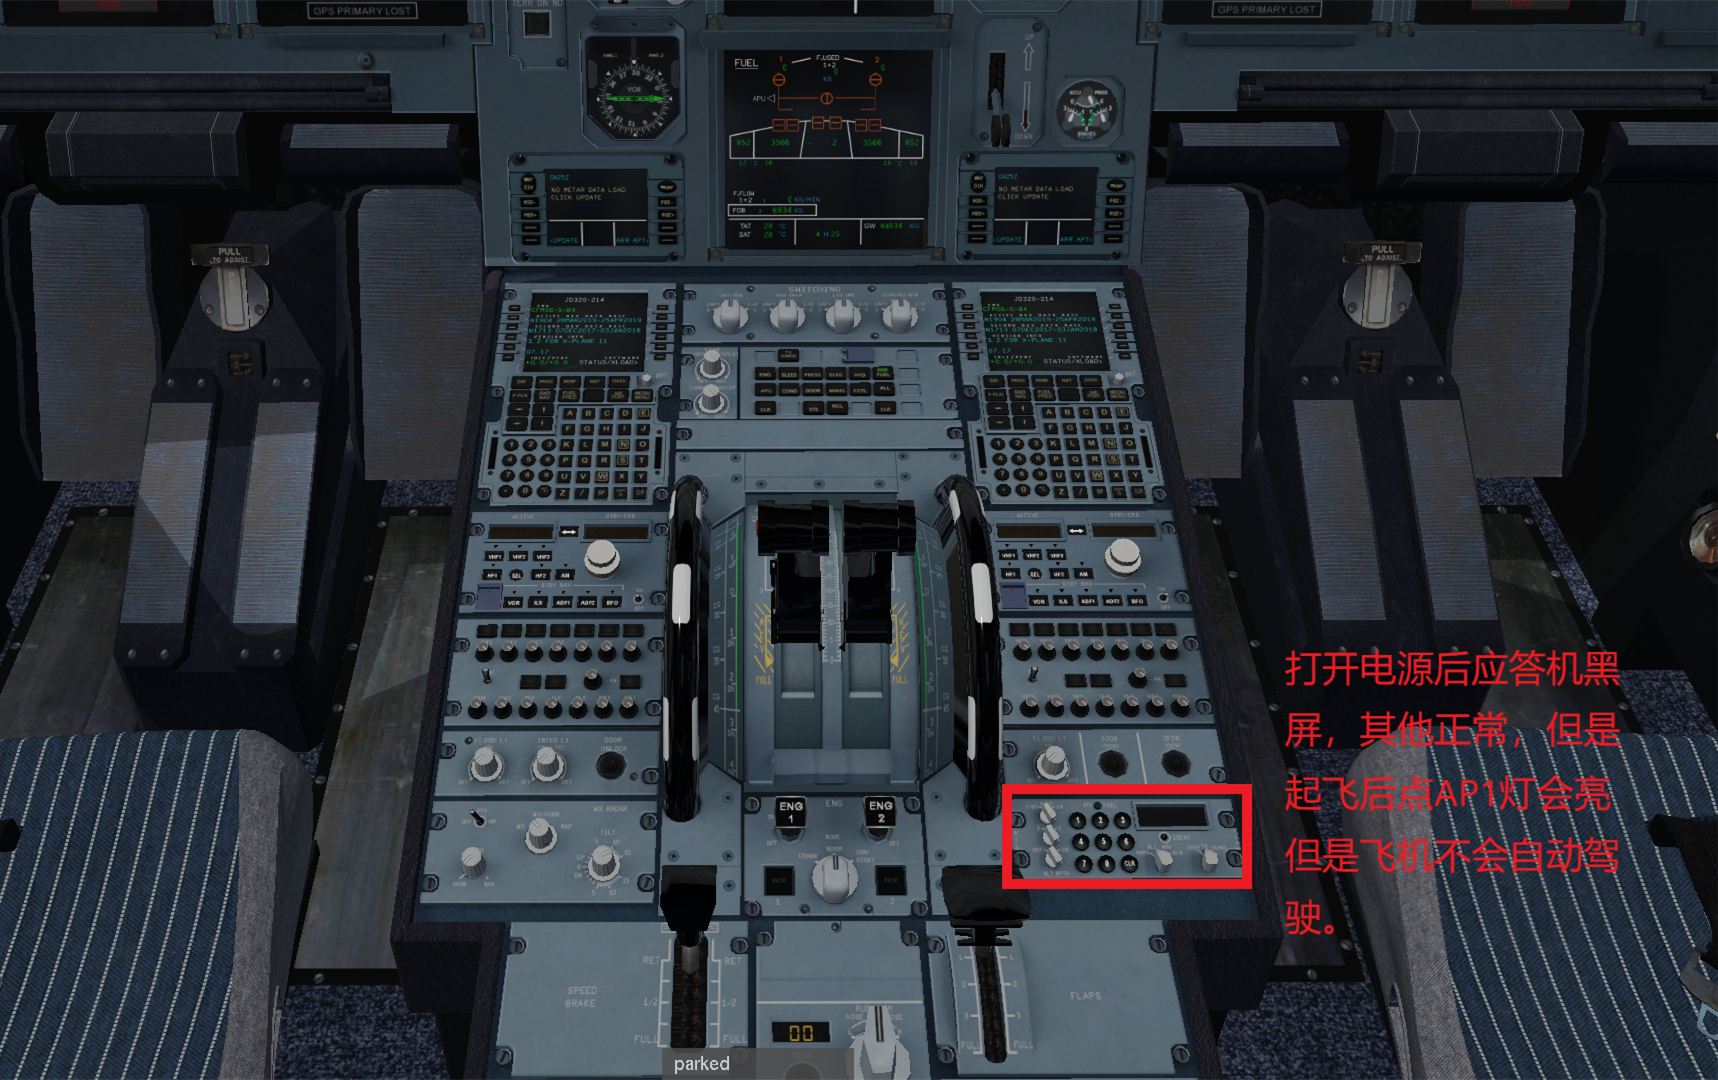 JARD A320  不能导航应答机黑屏的解决办法-767 